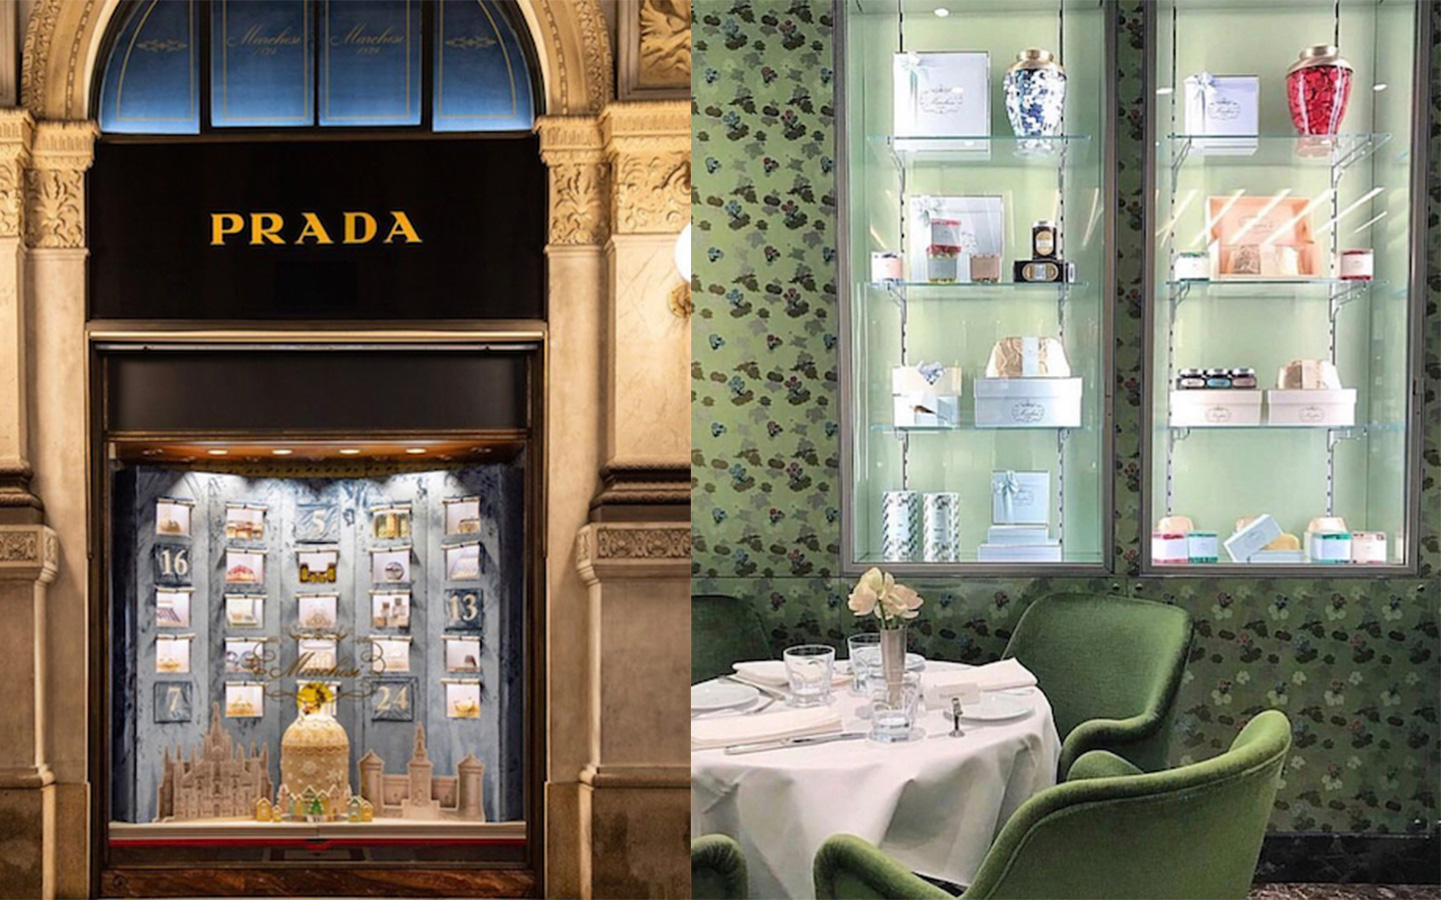 Khách sạn Louis Vuitton, nhà hàng Gucci, tiệm bánh Prada: Khi các thương  hiệu thời trang cao cấp quyết tâm đem lại những dịch vụ trải nghiệm xa xỉ  nhất cho khách